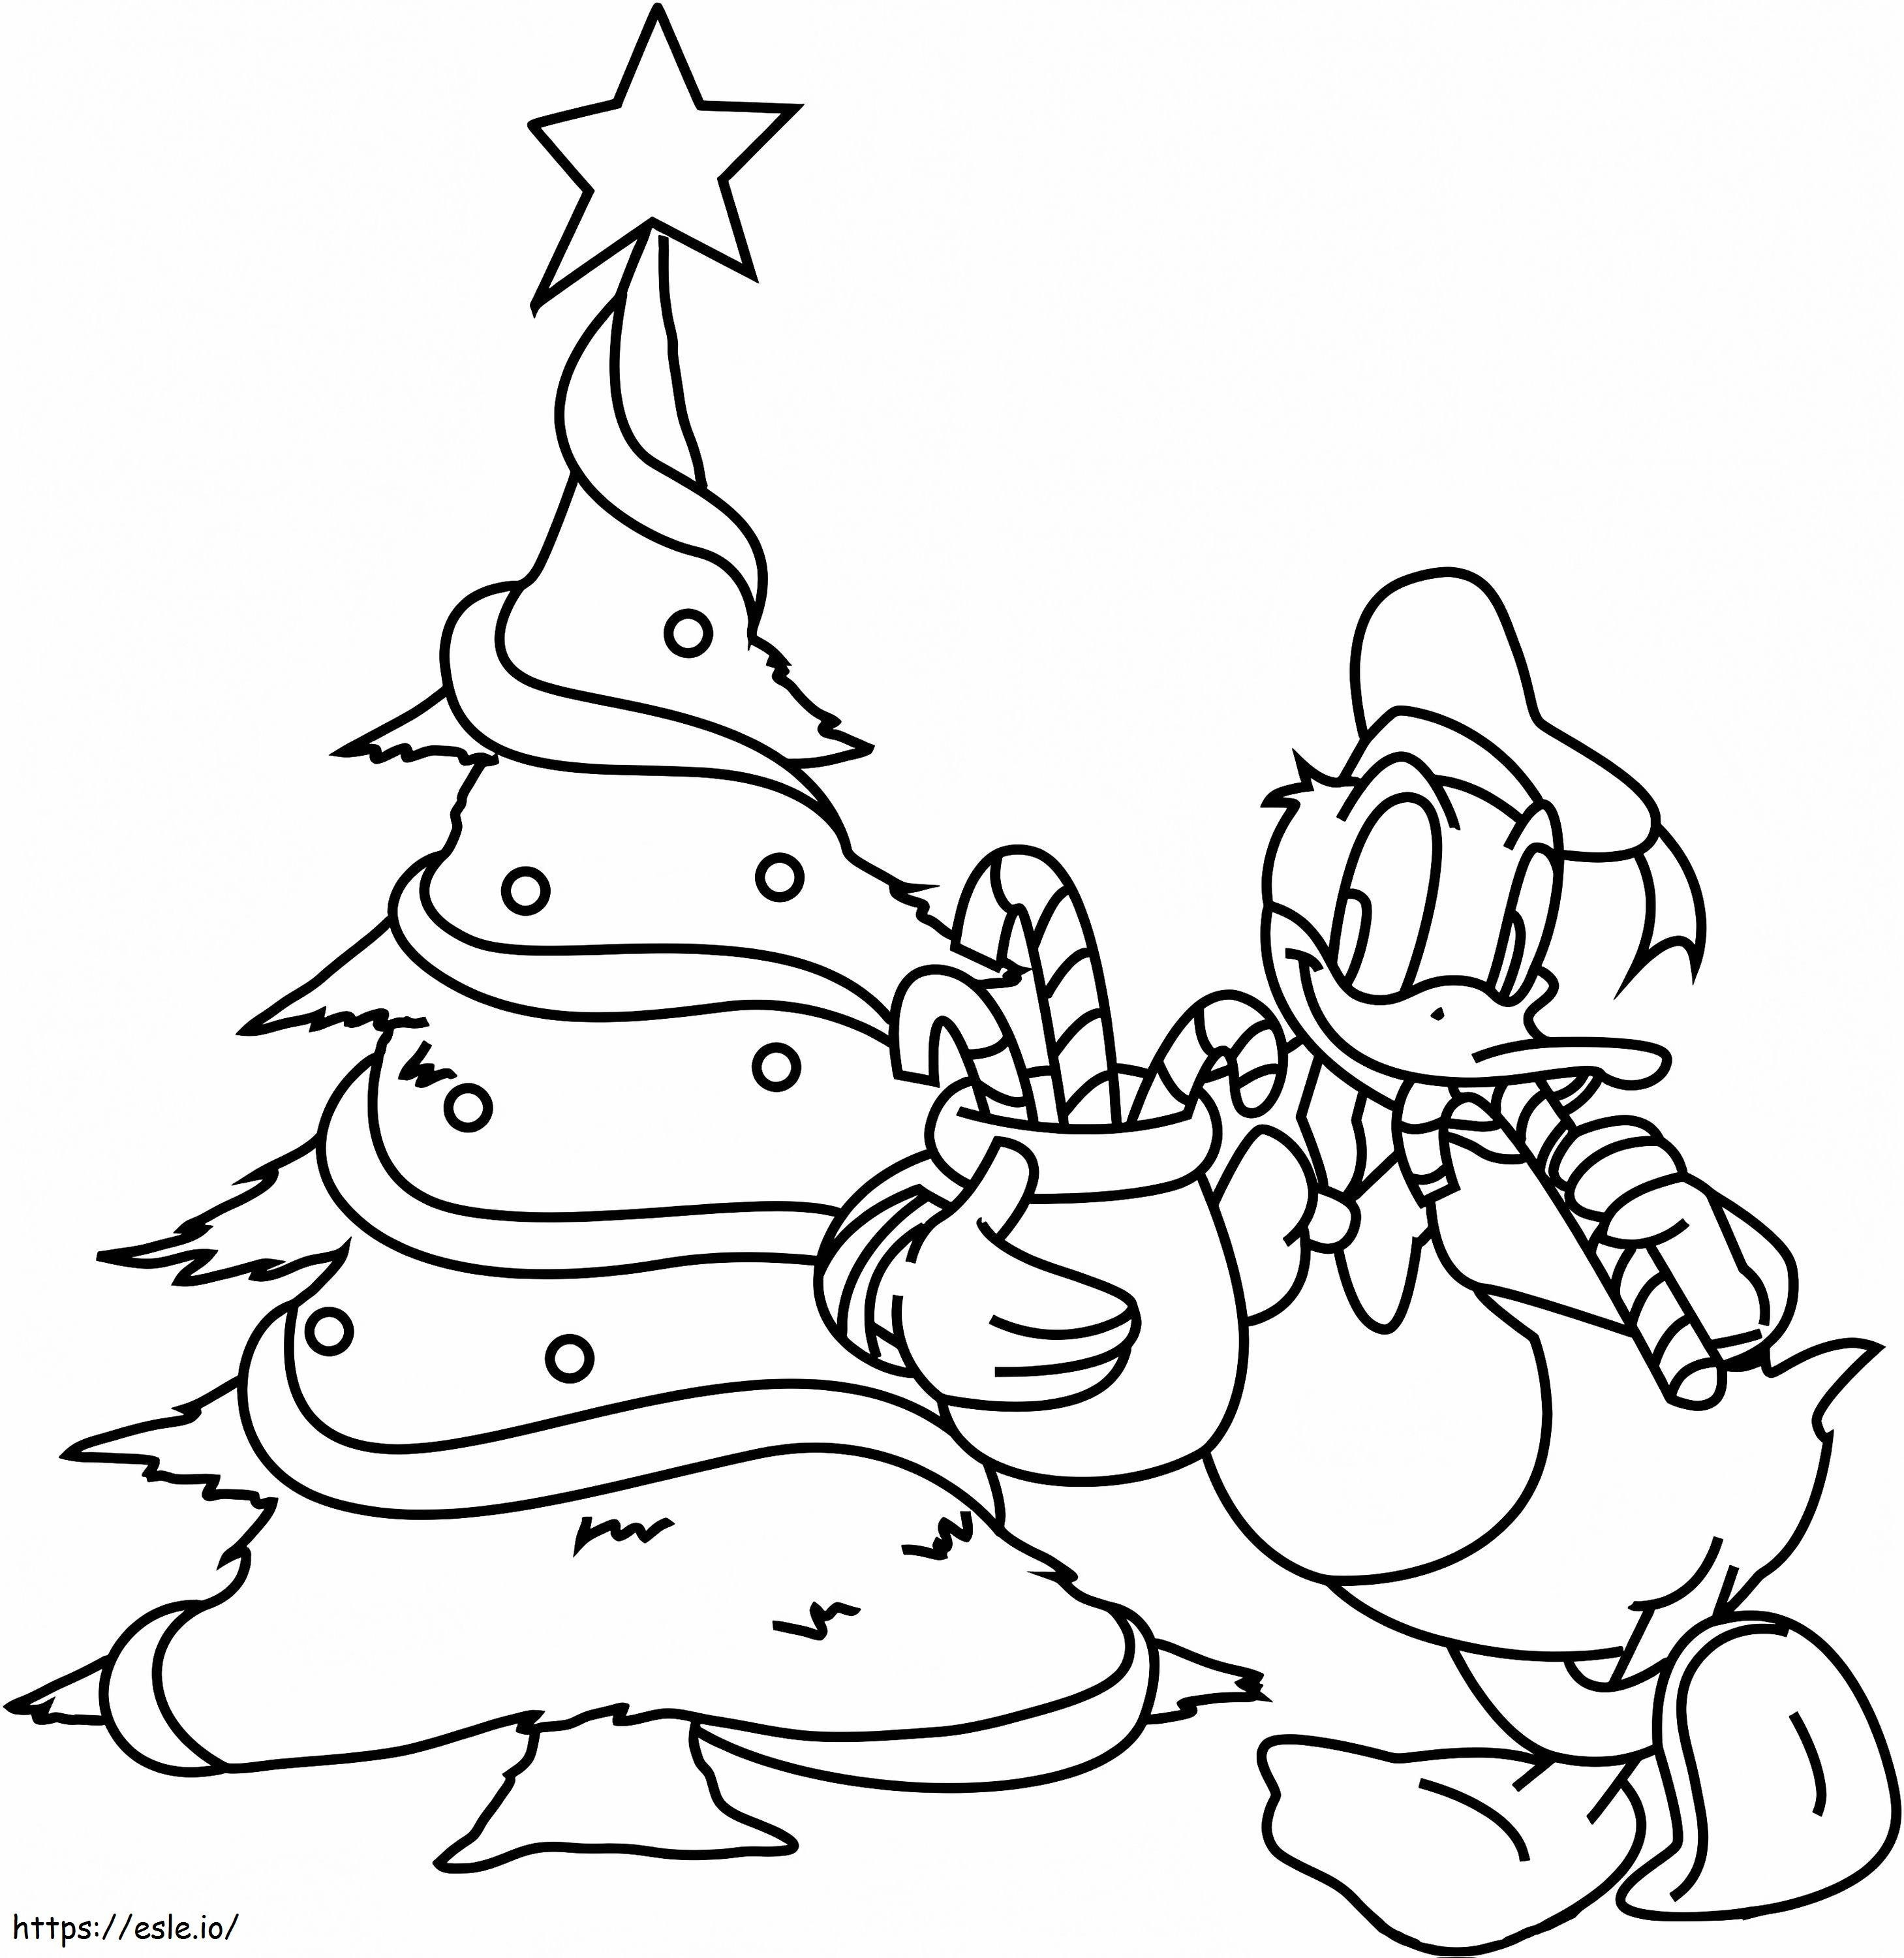 Coloriage  Donald Duck avec sapin de Noël A4 à imprimer dessin